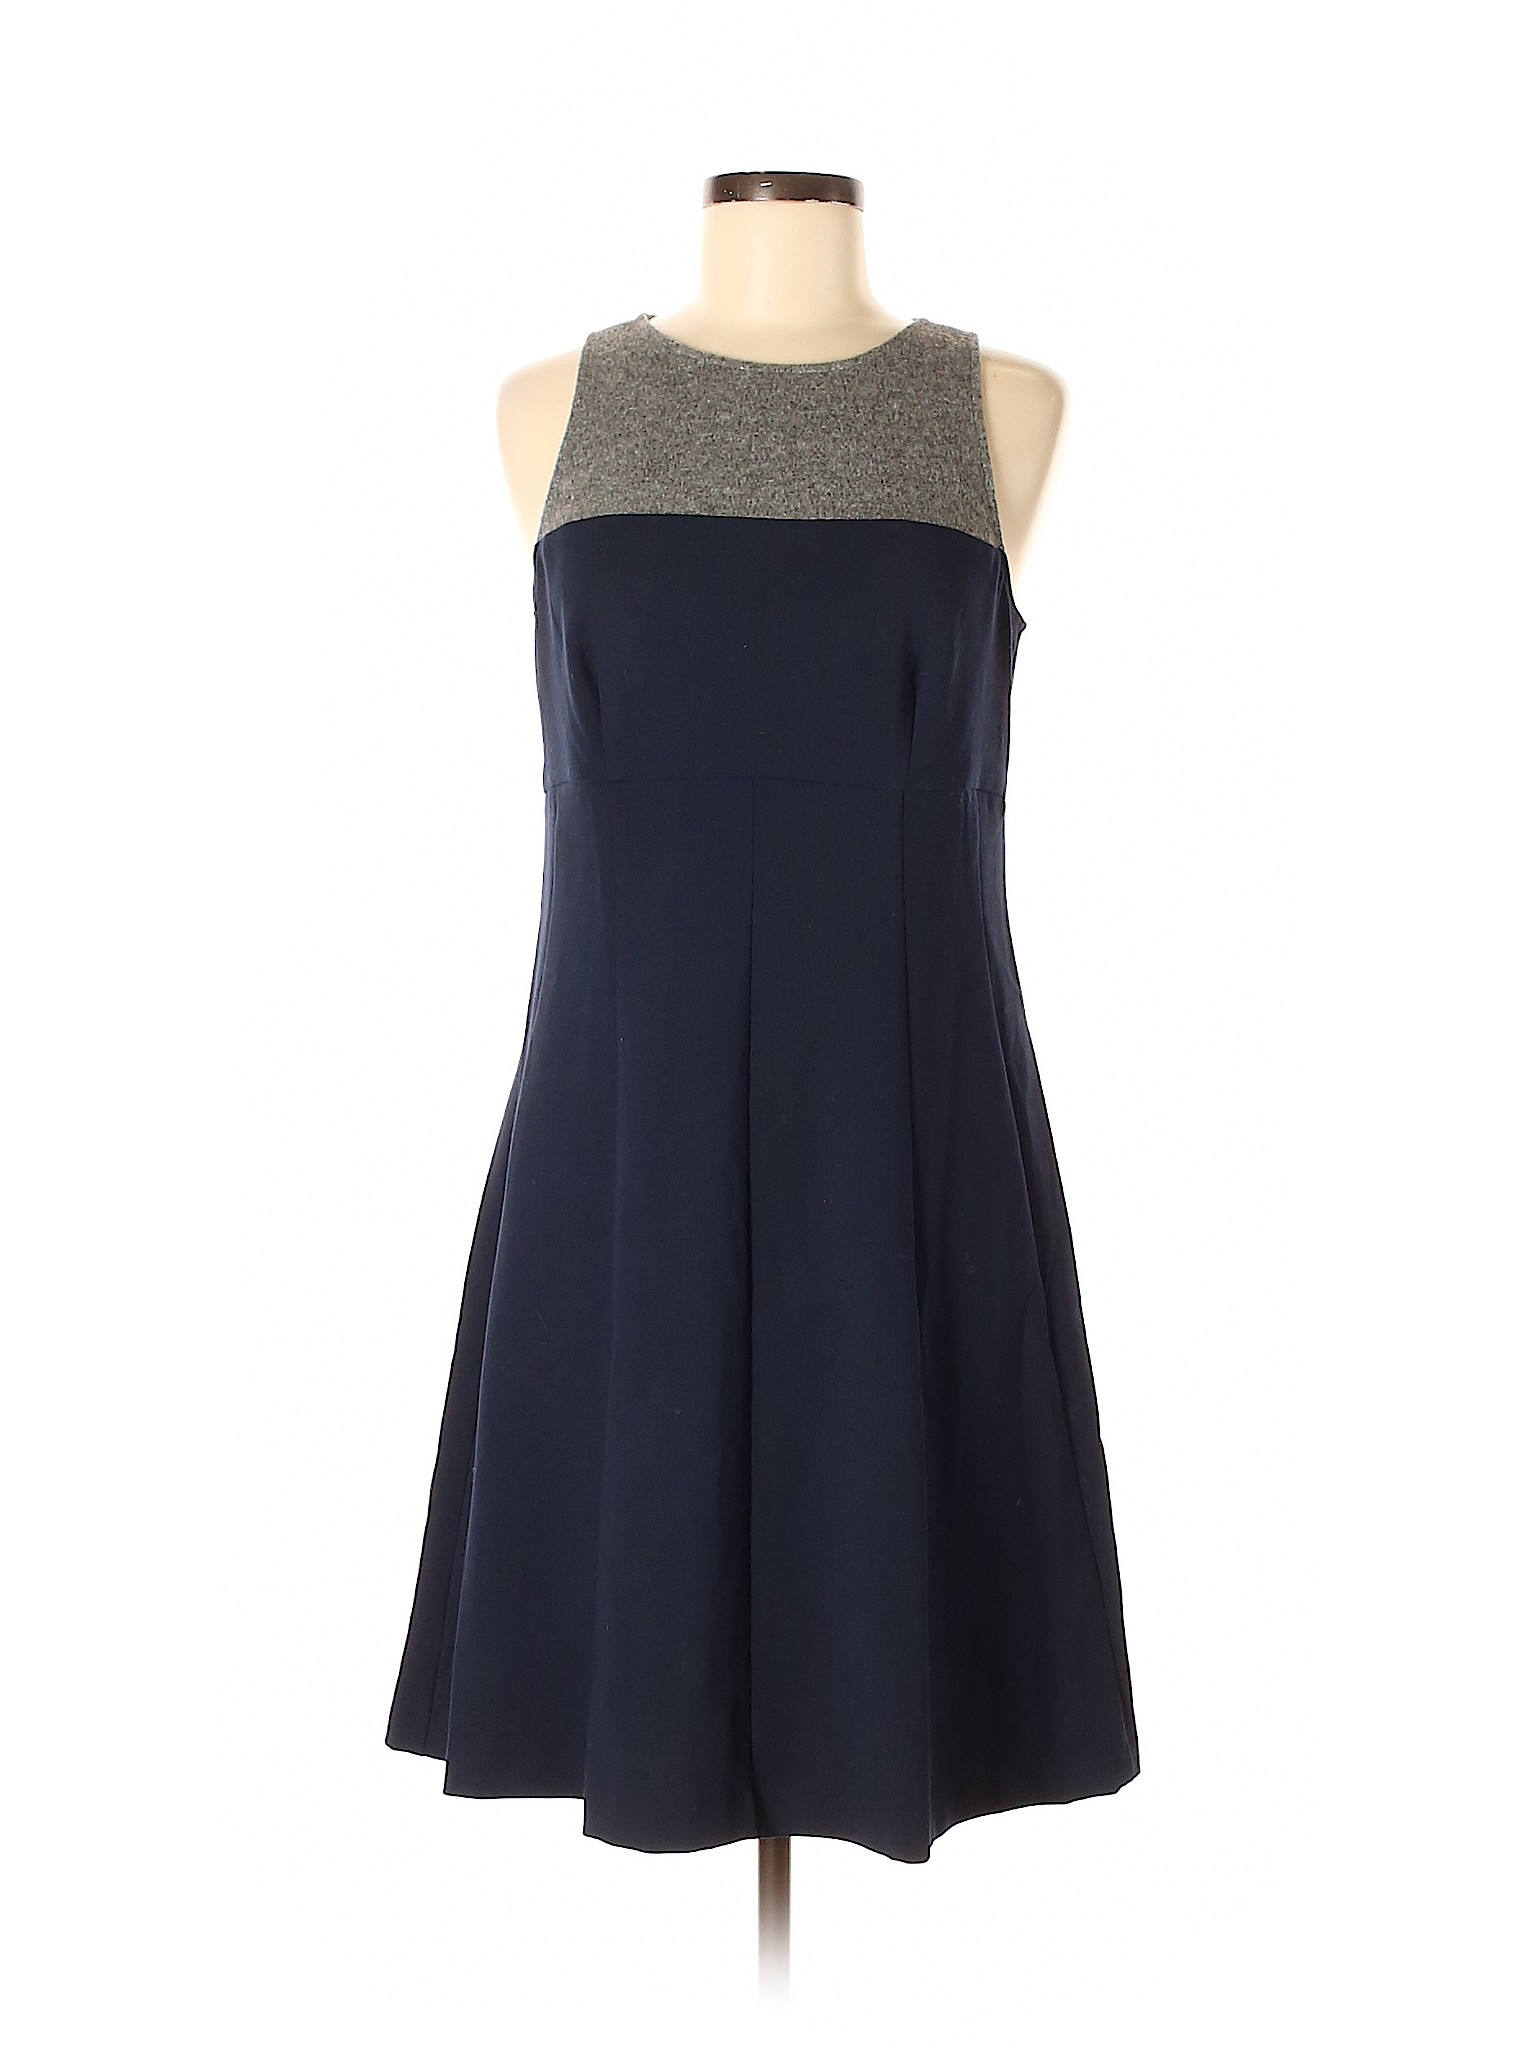 Ann Taylor Loft Women Blue Casual Dress 6 | eBay